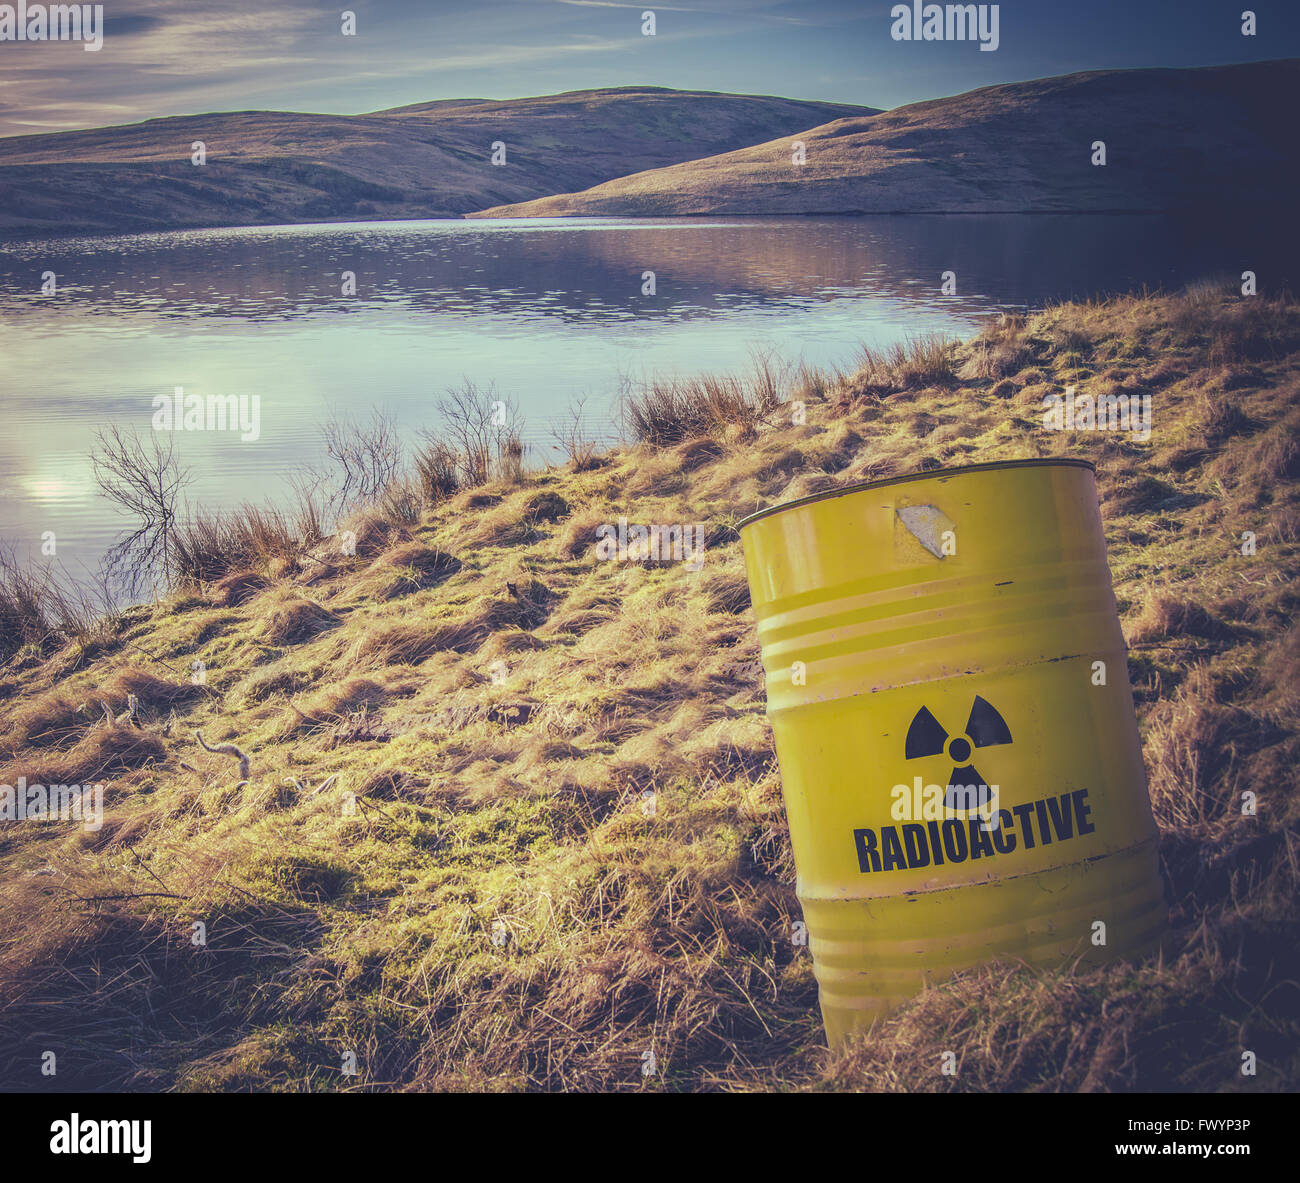 Barril de desechos nucleares radiactivos cerca del agua Foto de stock